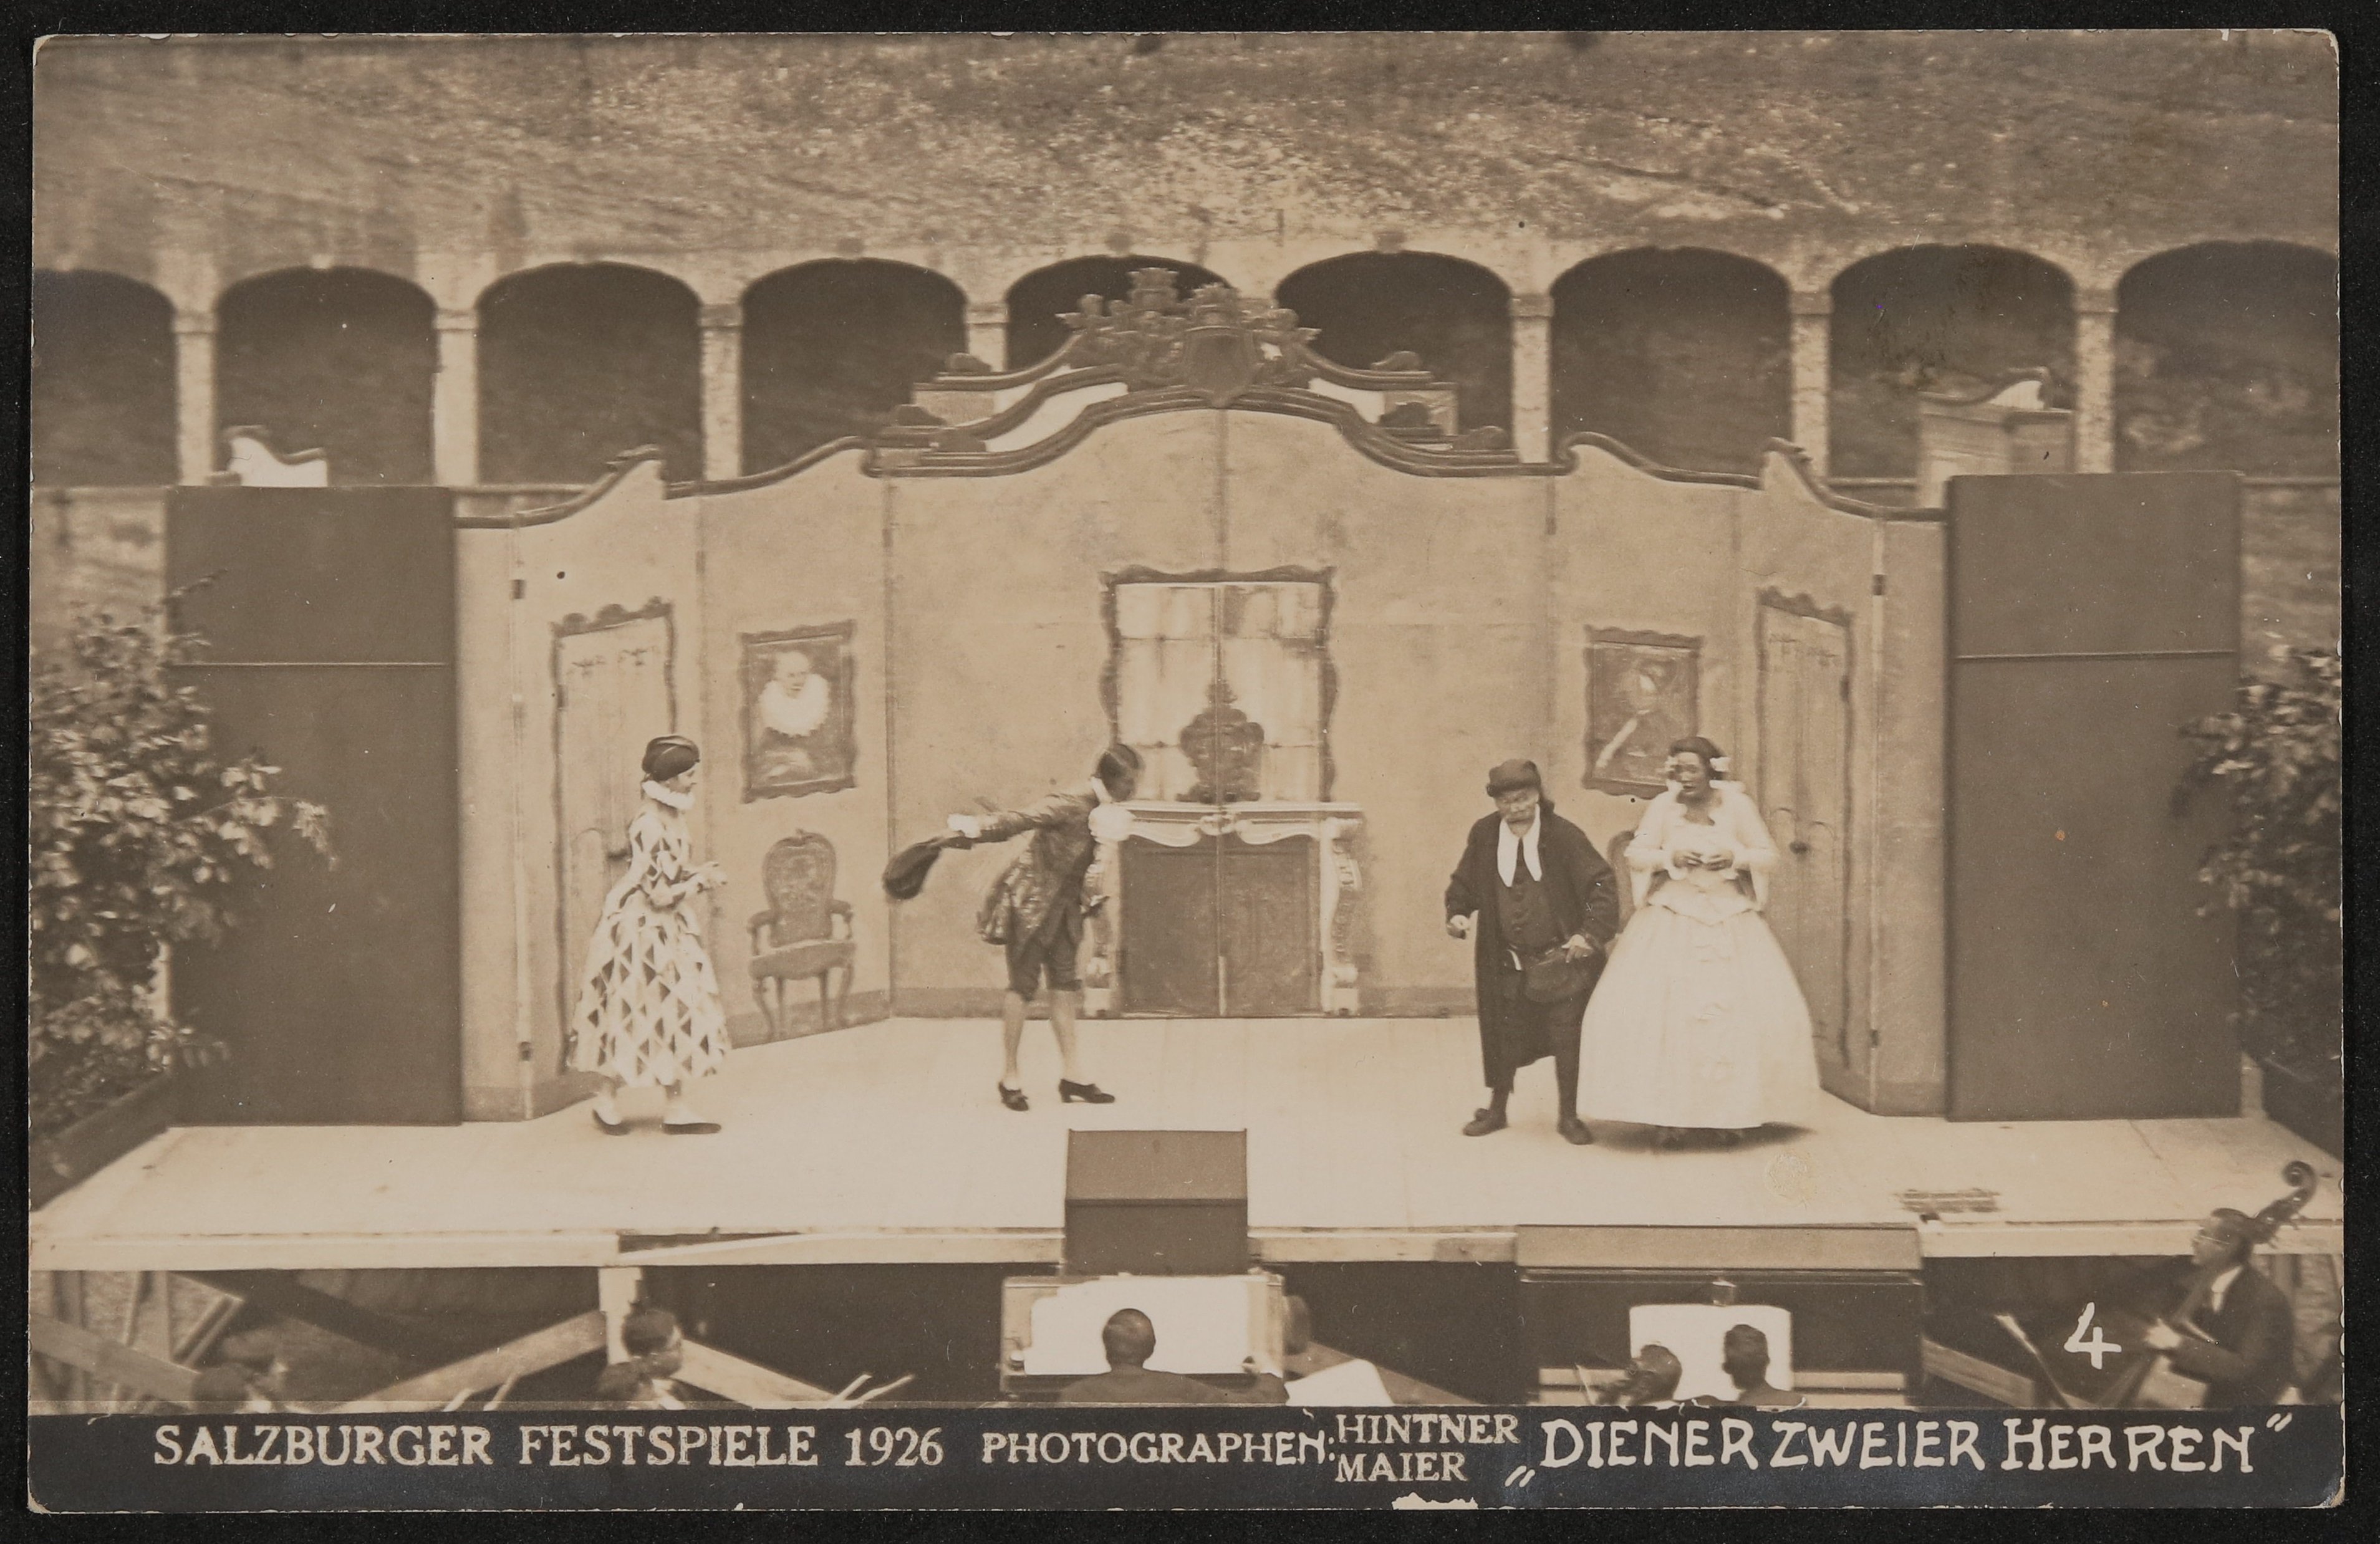 Theater-Fotografien, z.B. von den Salzburger Festspielen, "Jedermann", "Der Rosenkavalier", "Das Salzburger große Welttheater" etc., Schenkung von Oct (Freies Deutsches Hochstift / Frankfurter Goethe-Museum CC BY-NC-SA)